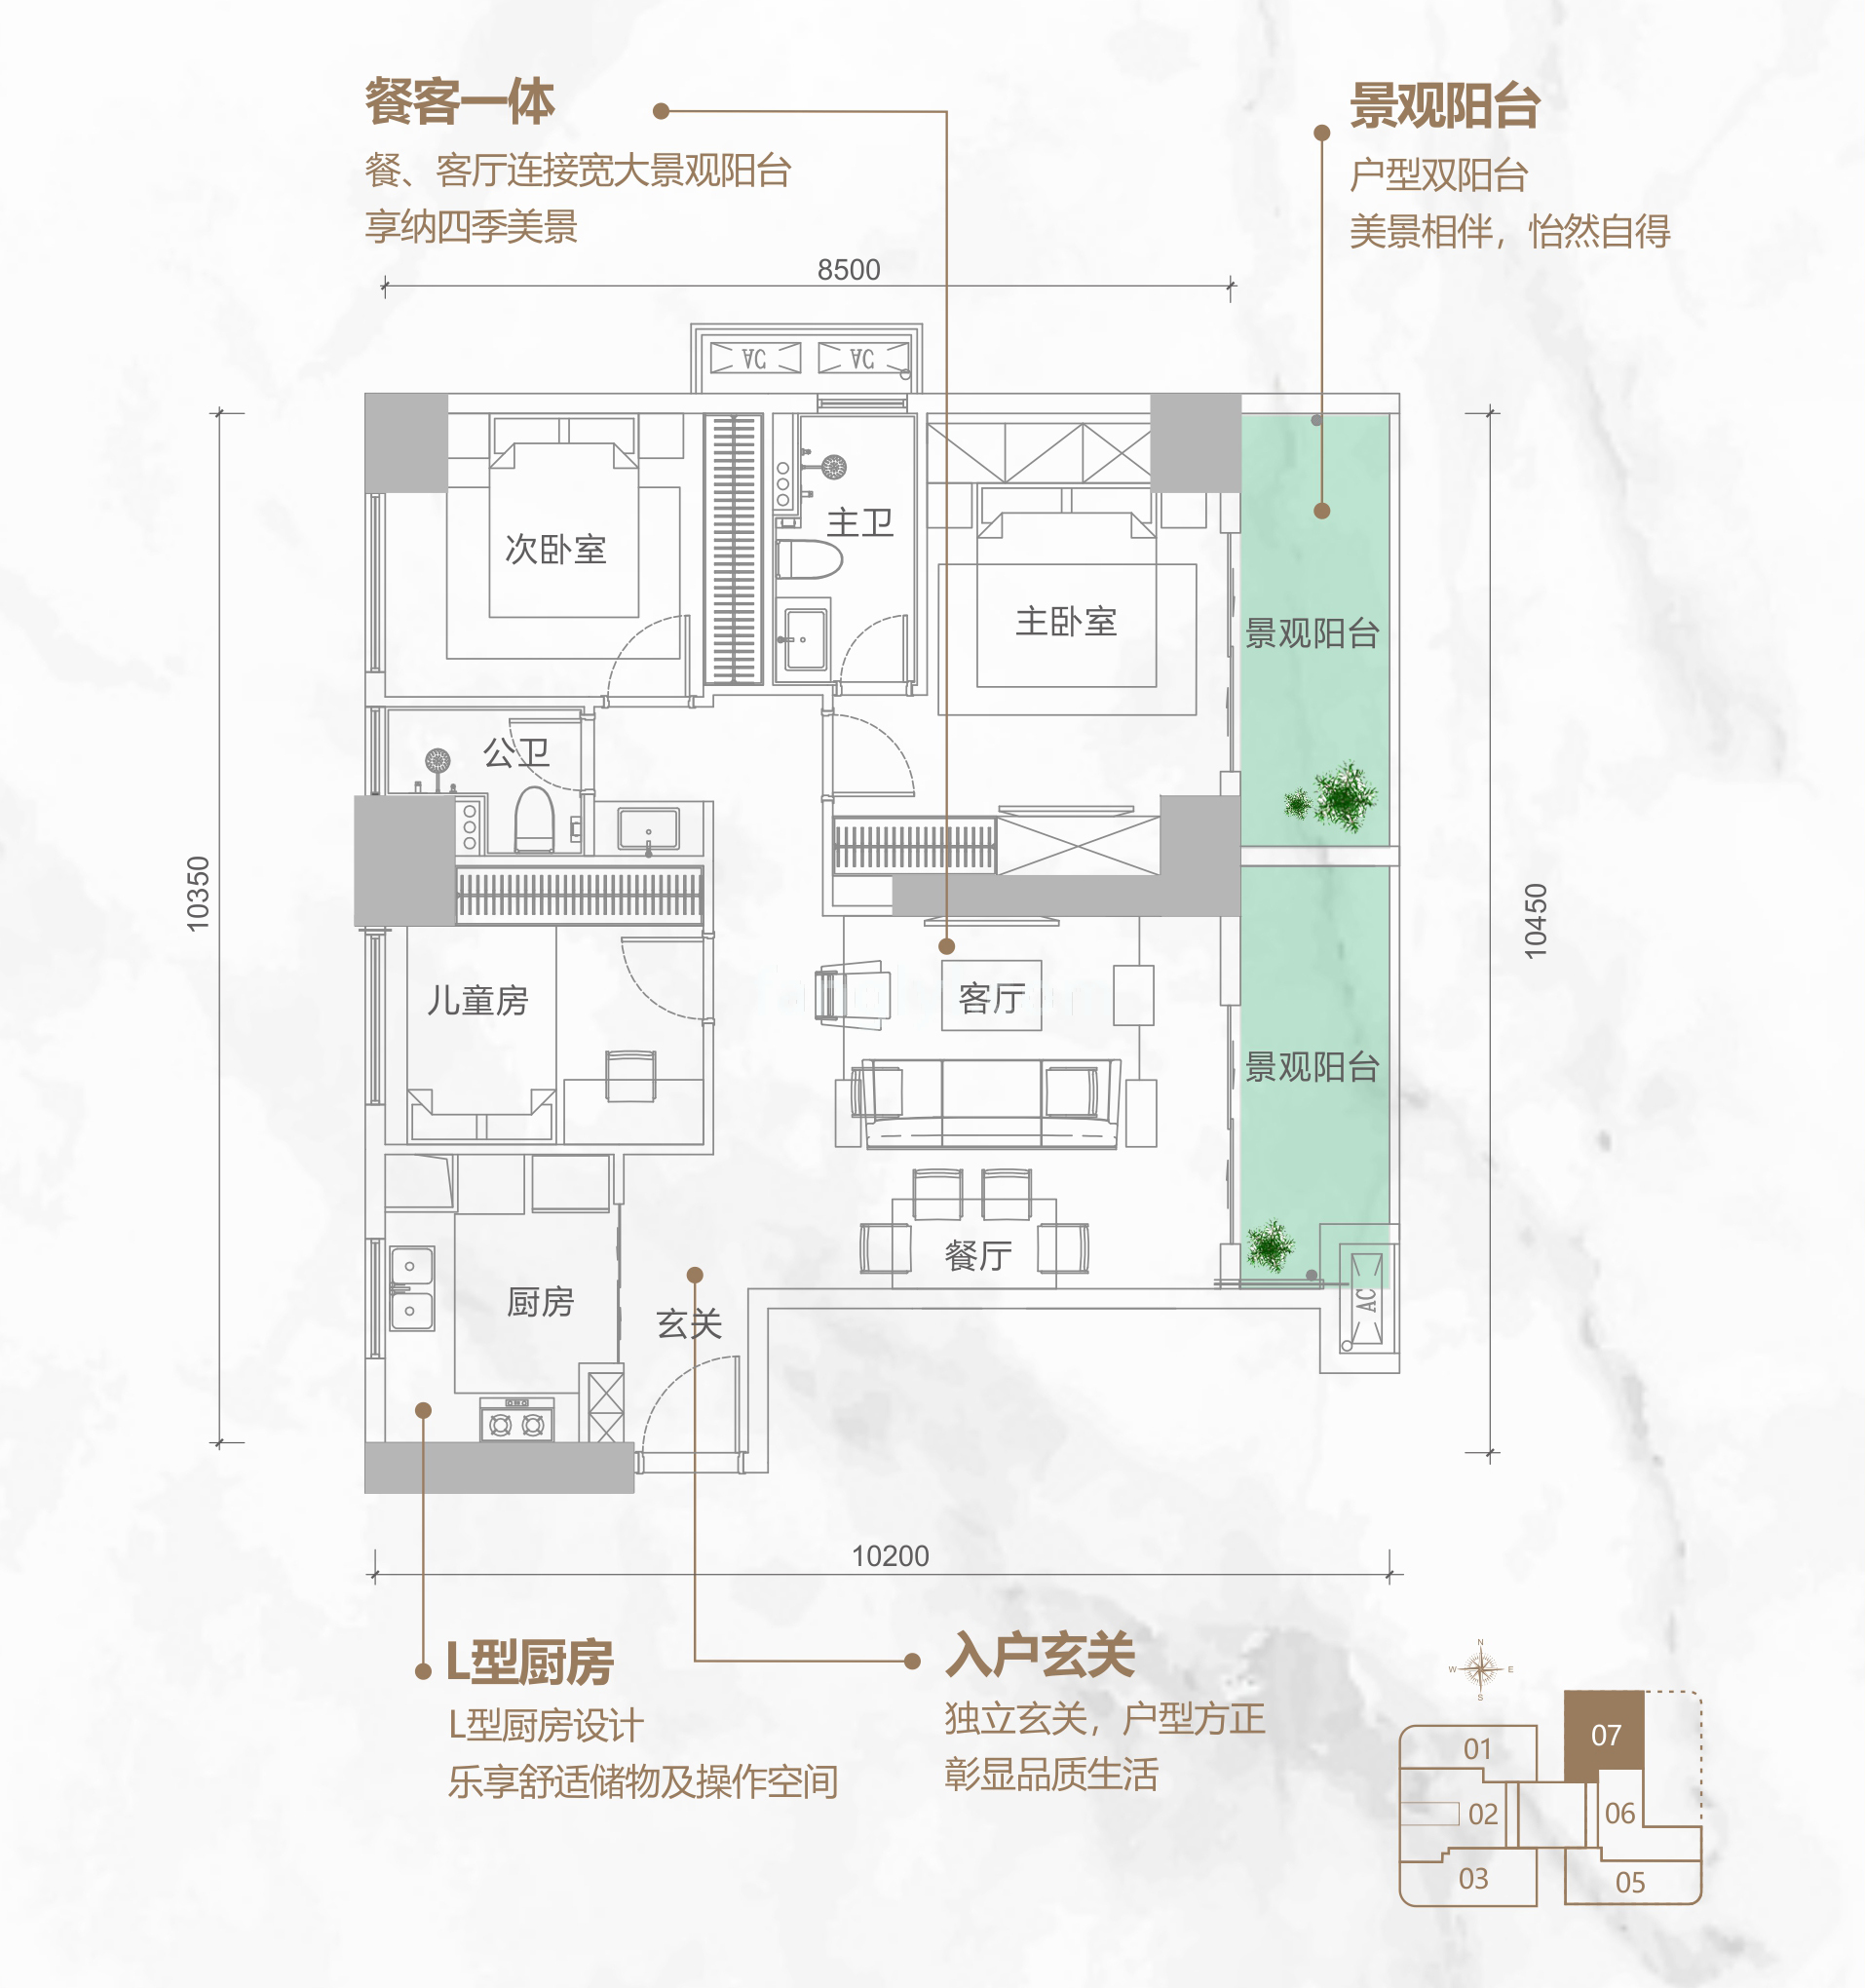 同康江语海 高层 A-07户型 3房2厅2卫 建筑面积111㎡